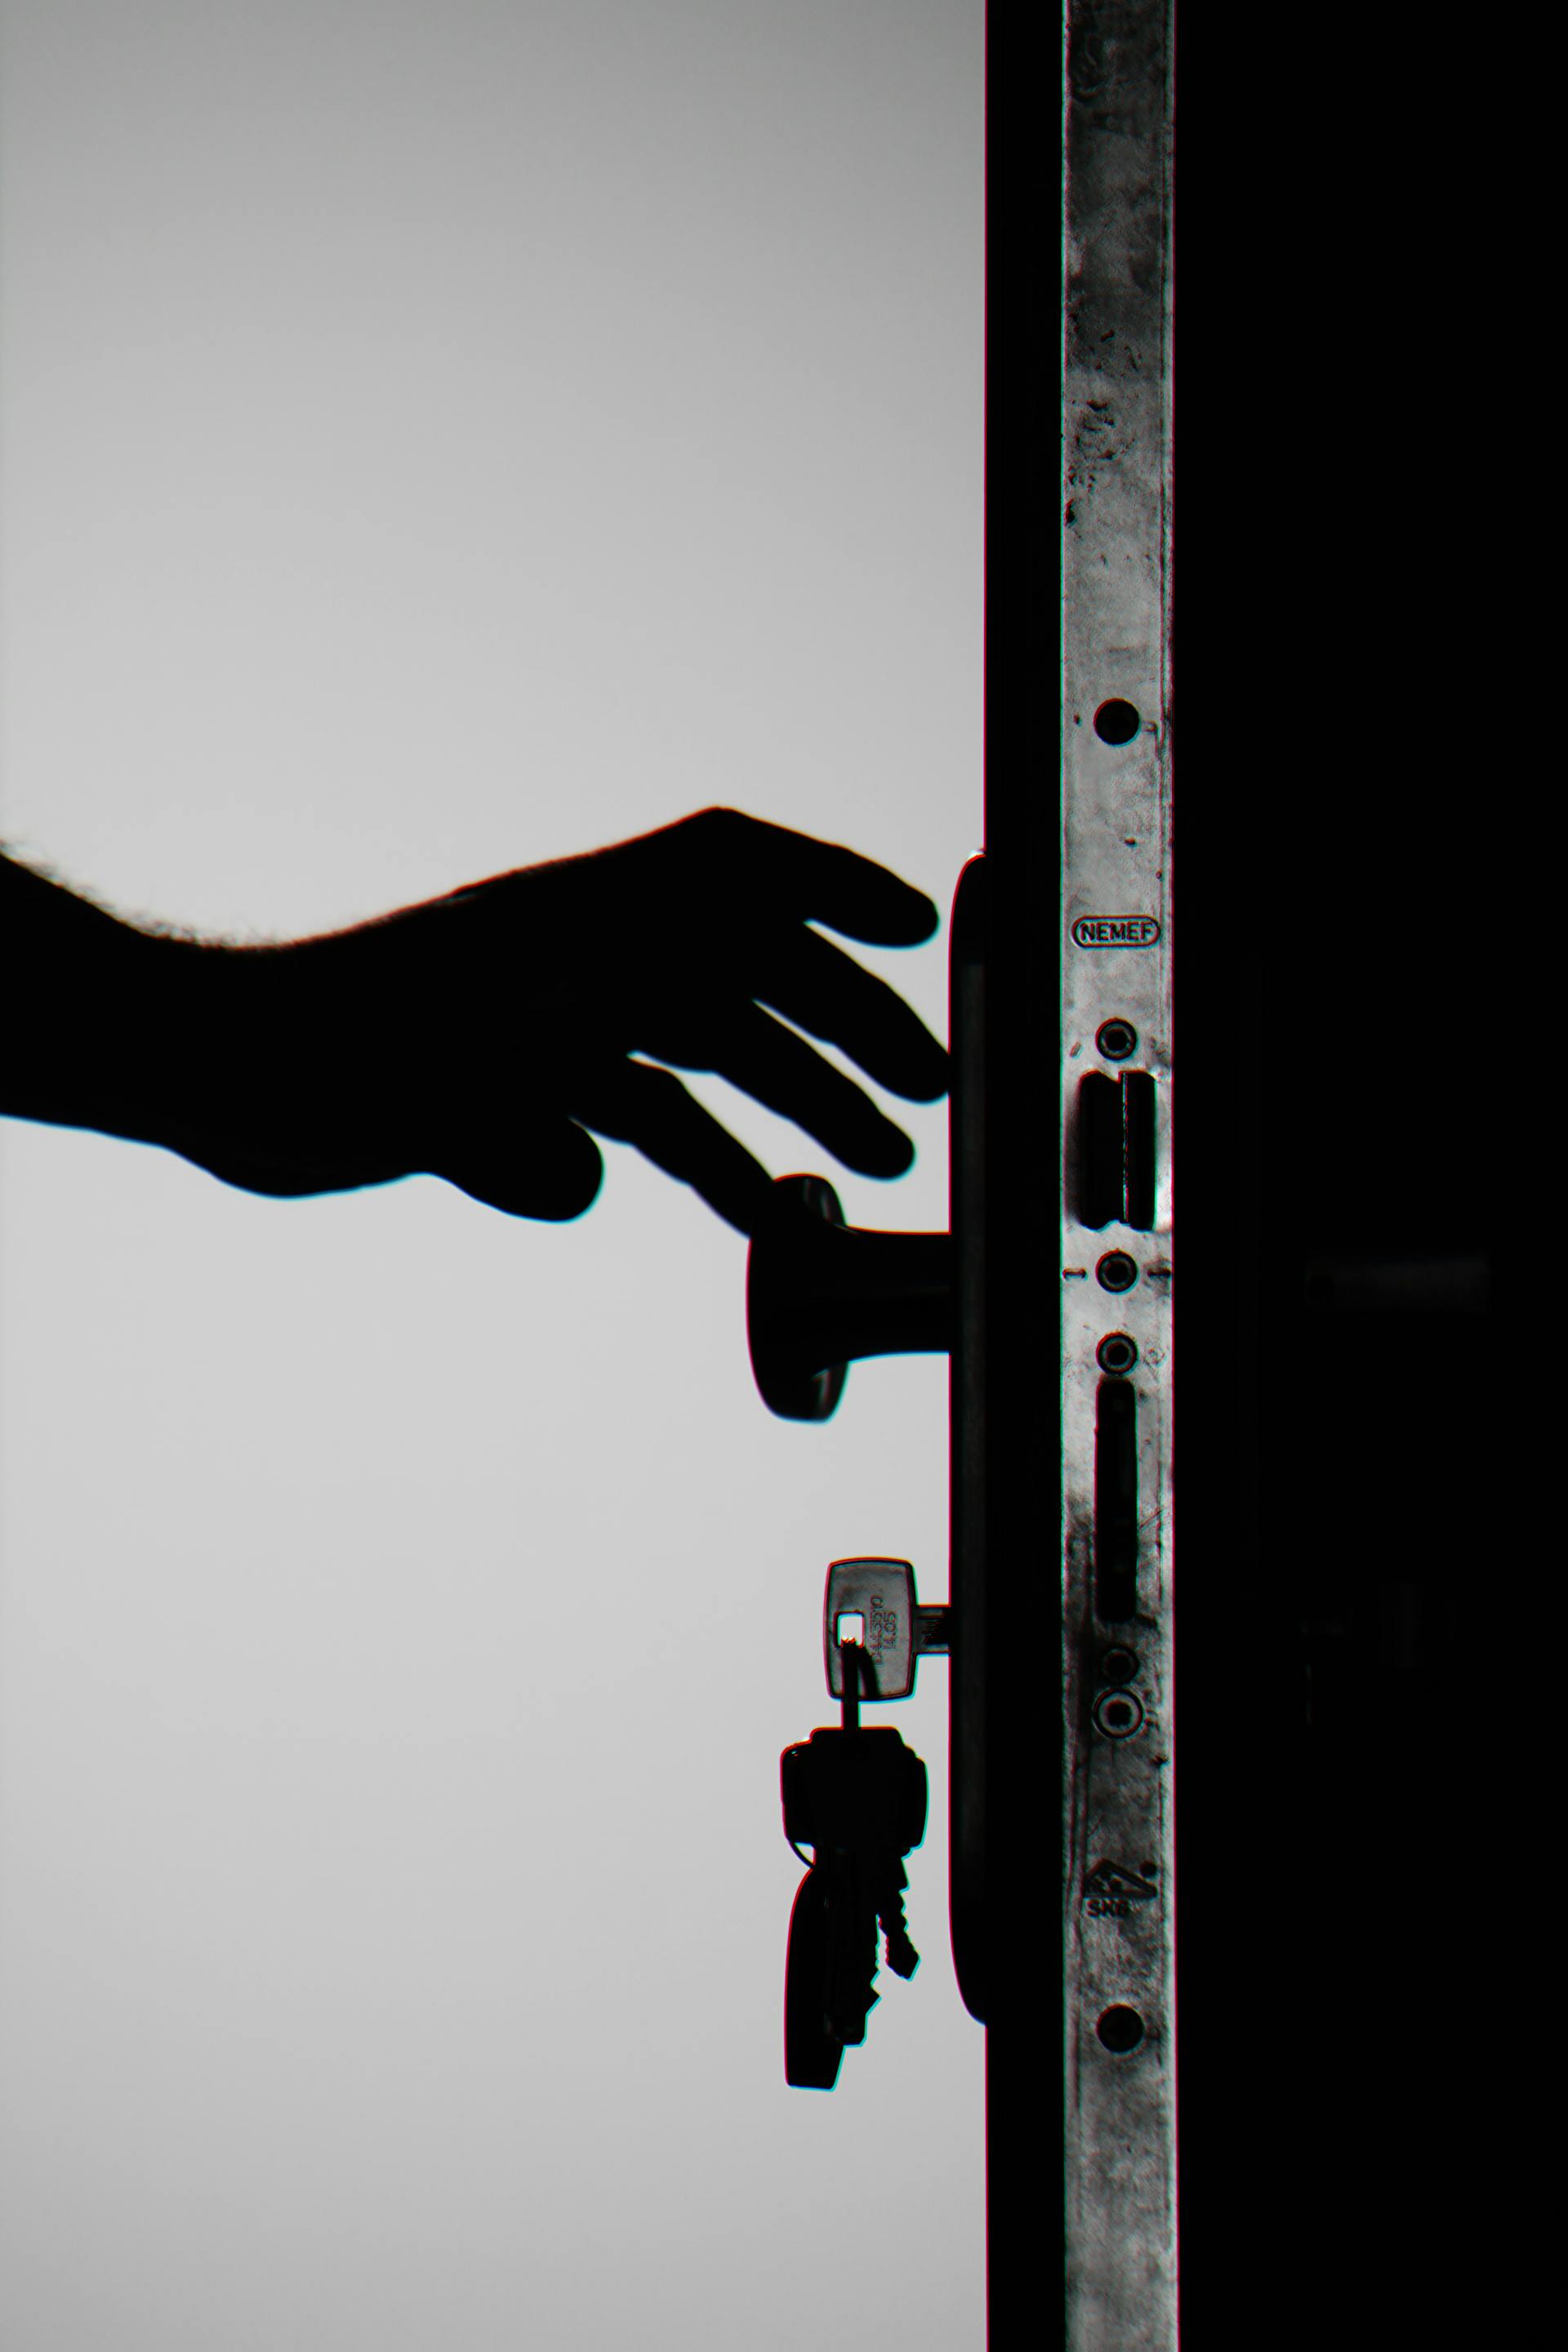 Eine Person, die nach der Tür greift | Quelle: Pexels